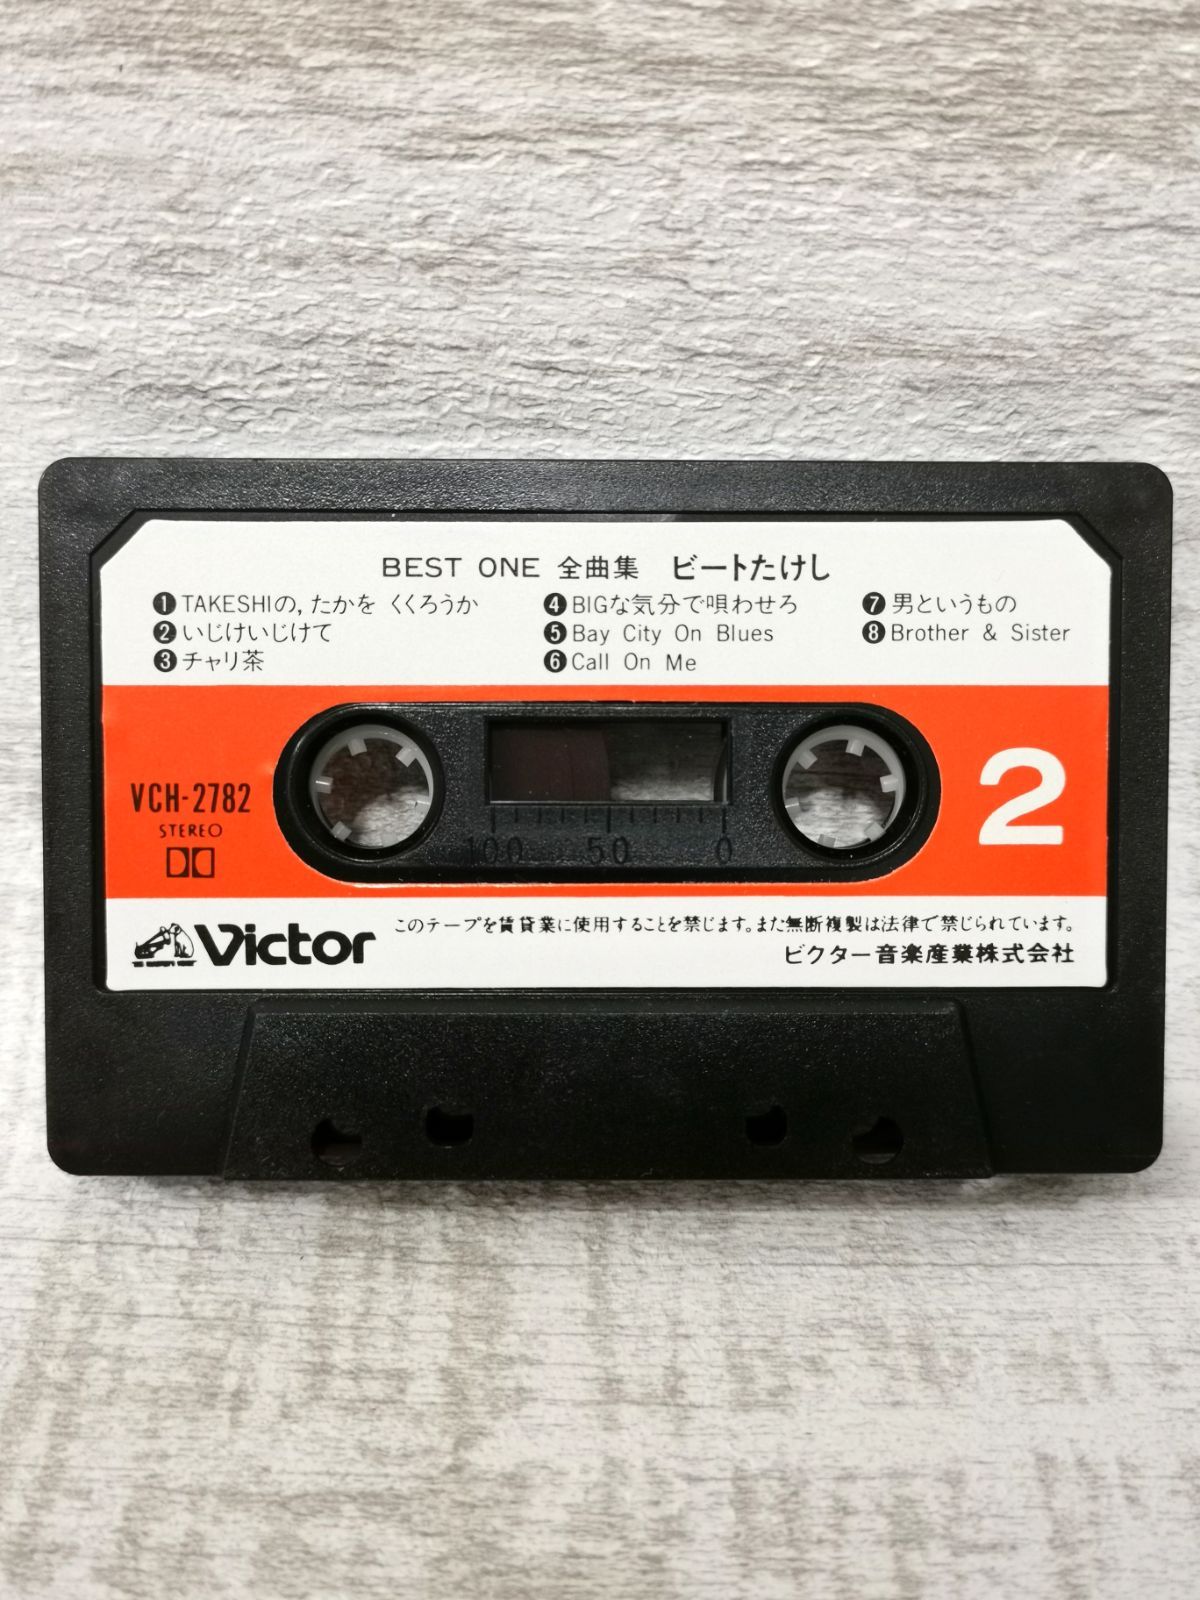 北島三郎 ゴールデンベスト DCT-5166 カセットテープ 昭和レトロ - 邦楽